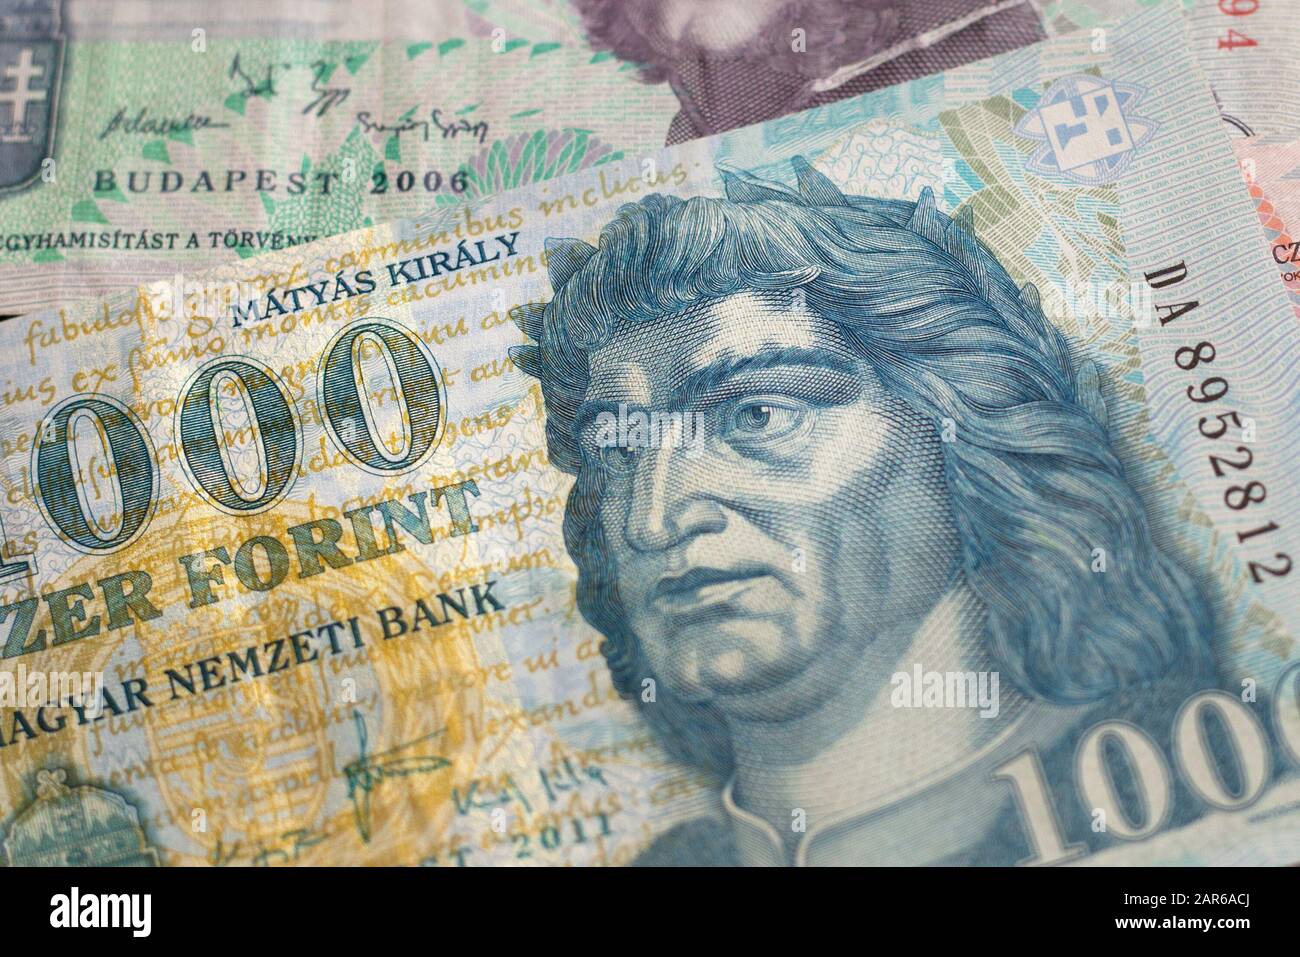 Arrière-plan de la monnaie de forint hongroise avec portrait de Matthias Corvinus. Fonds pour les affaires, la finance, la banque, la budgétisation, les questions économiques. Banque D'Images